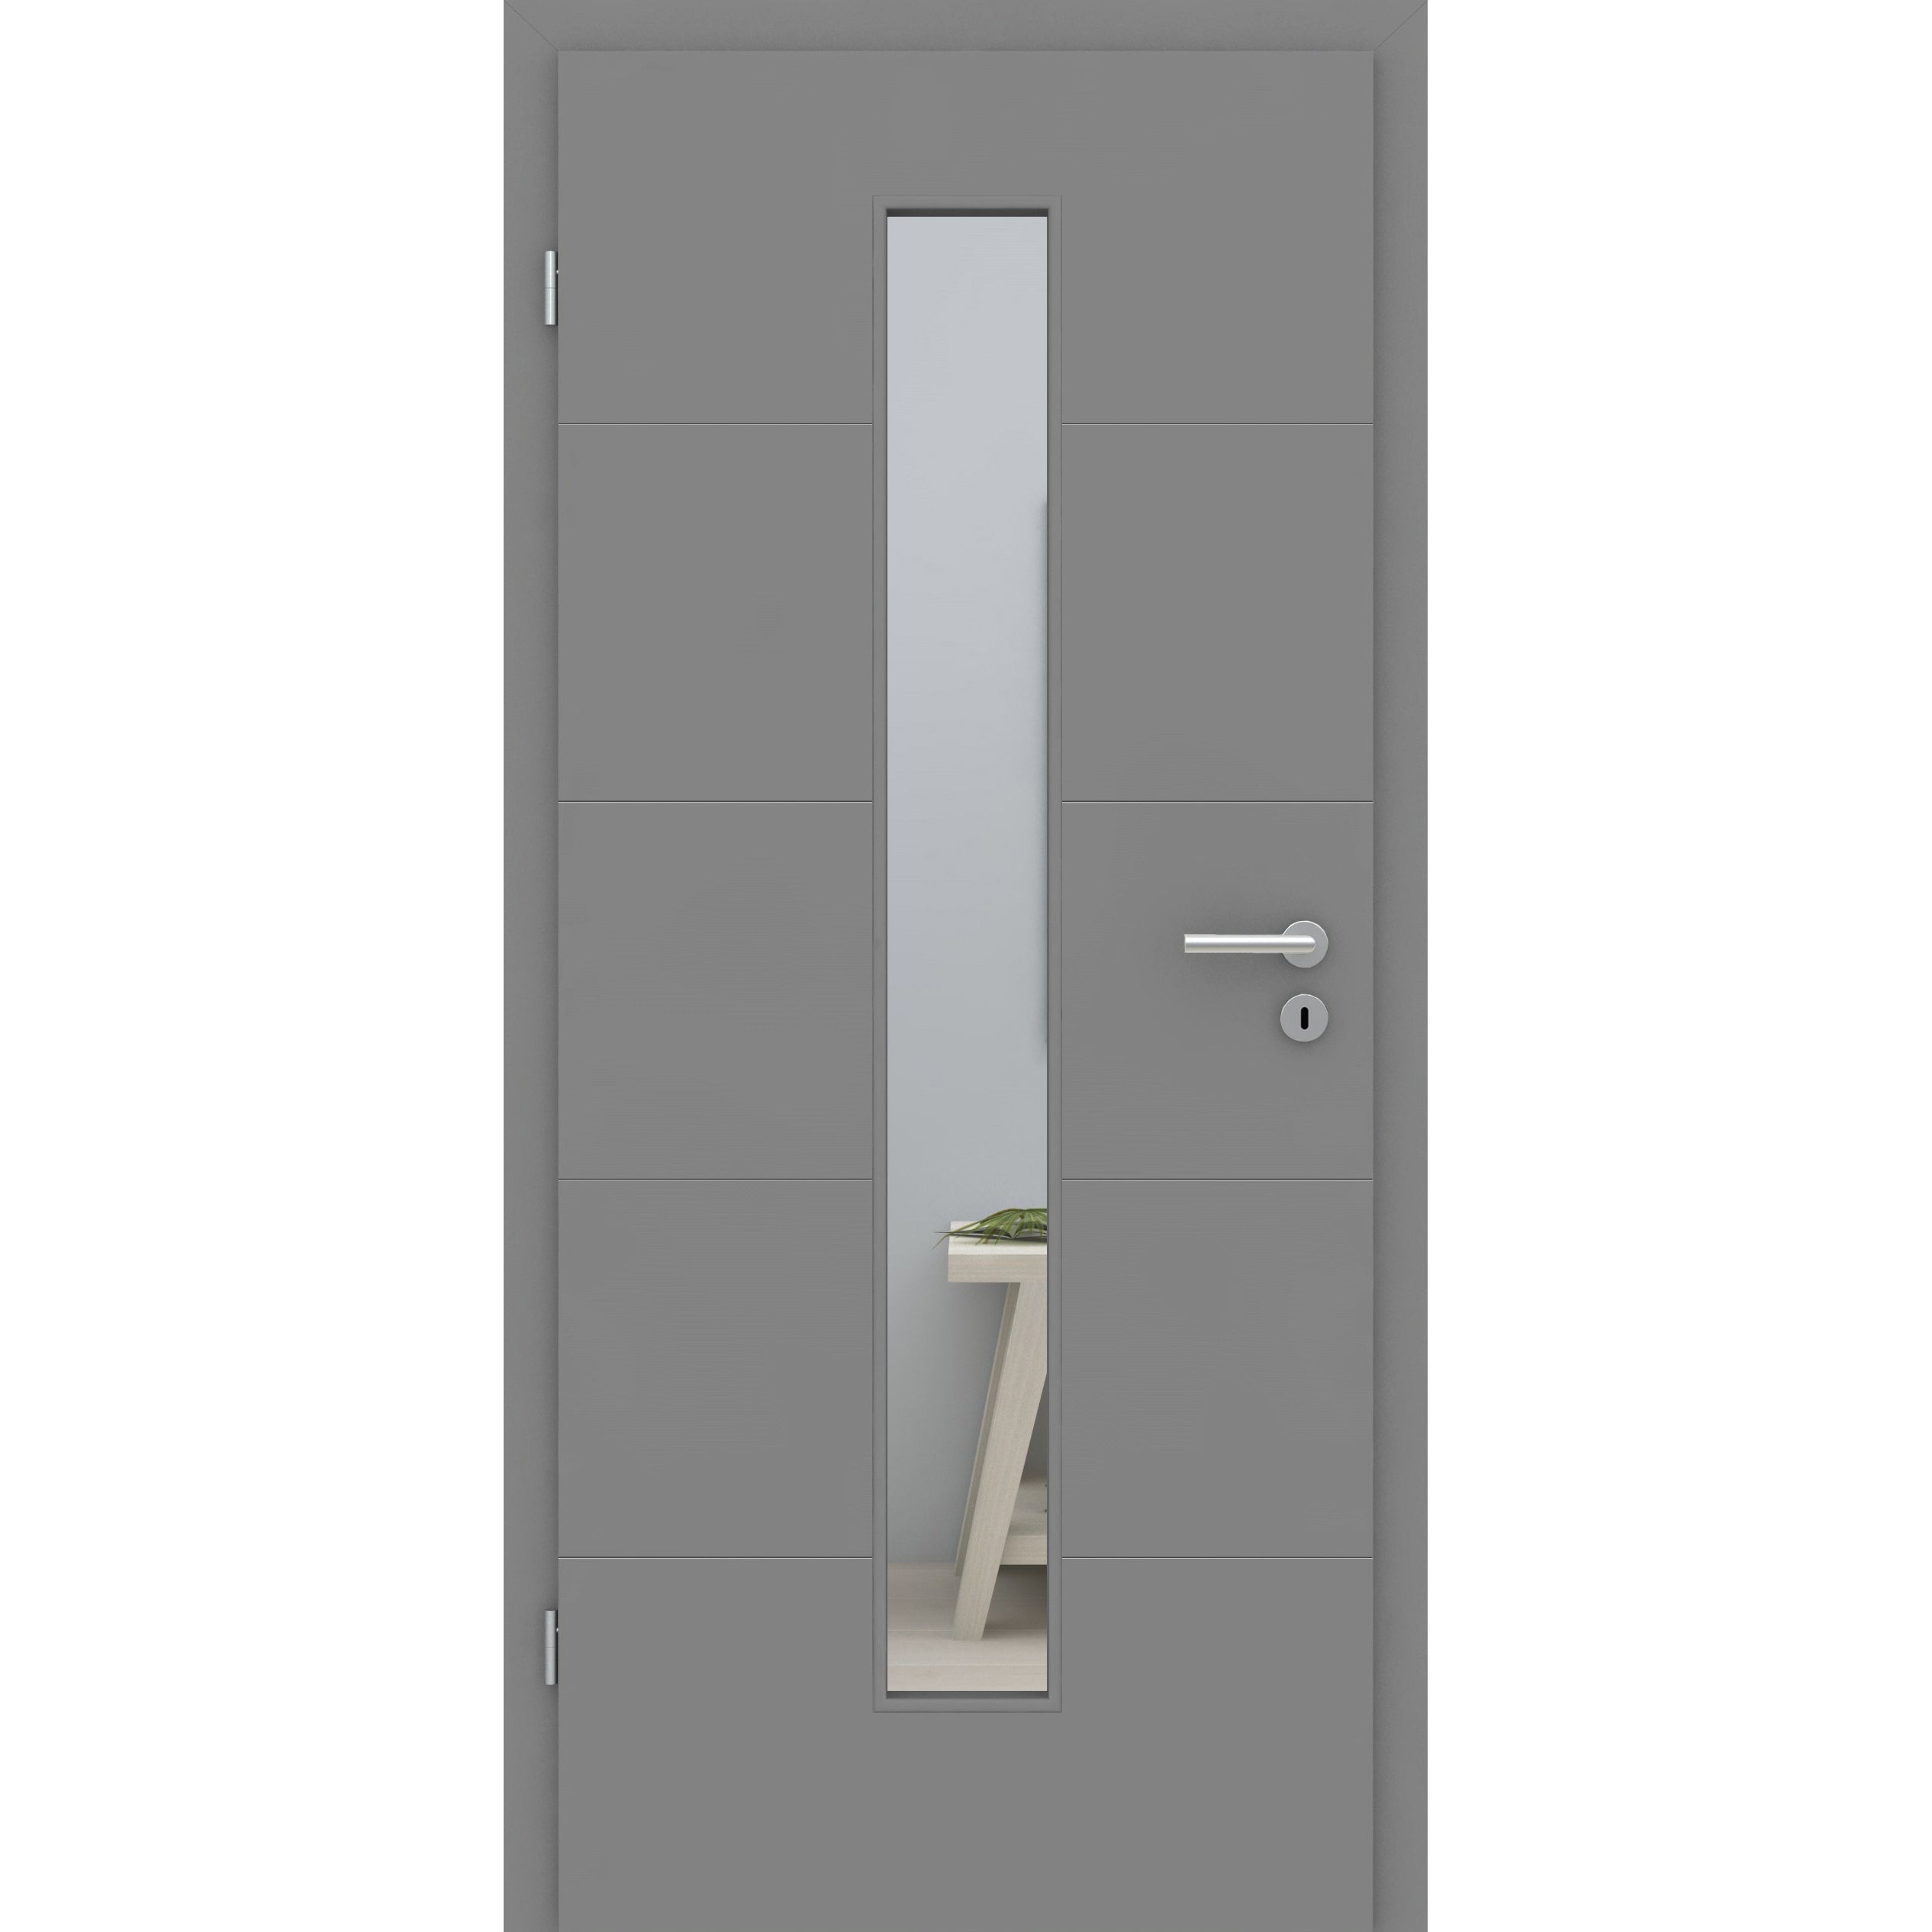 Zimmertür mit Zarge und Lichtausschnitt grau 4 Rillen quer Designkante - Modell Designtür Q47LAM